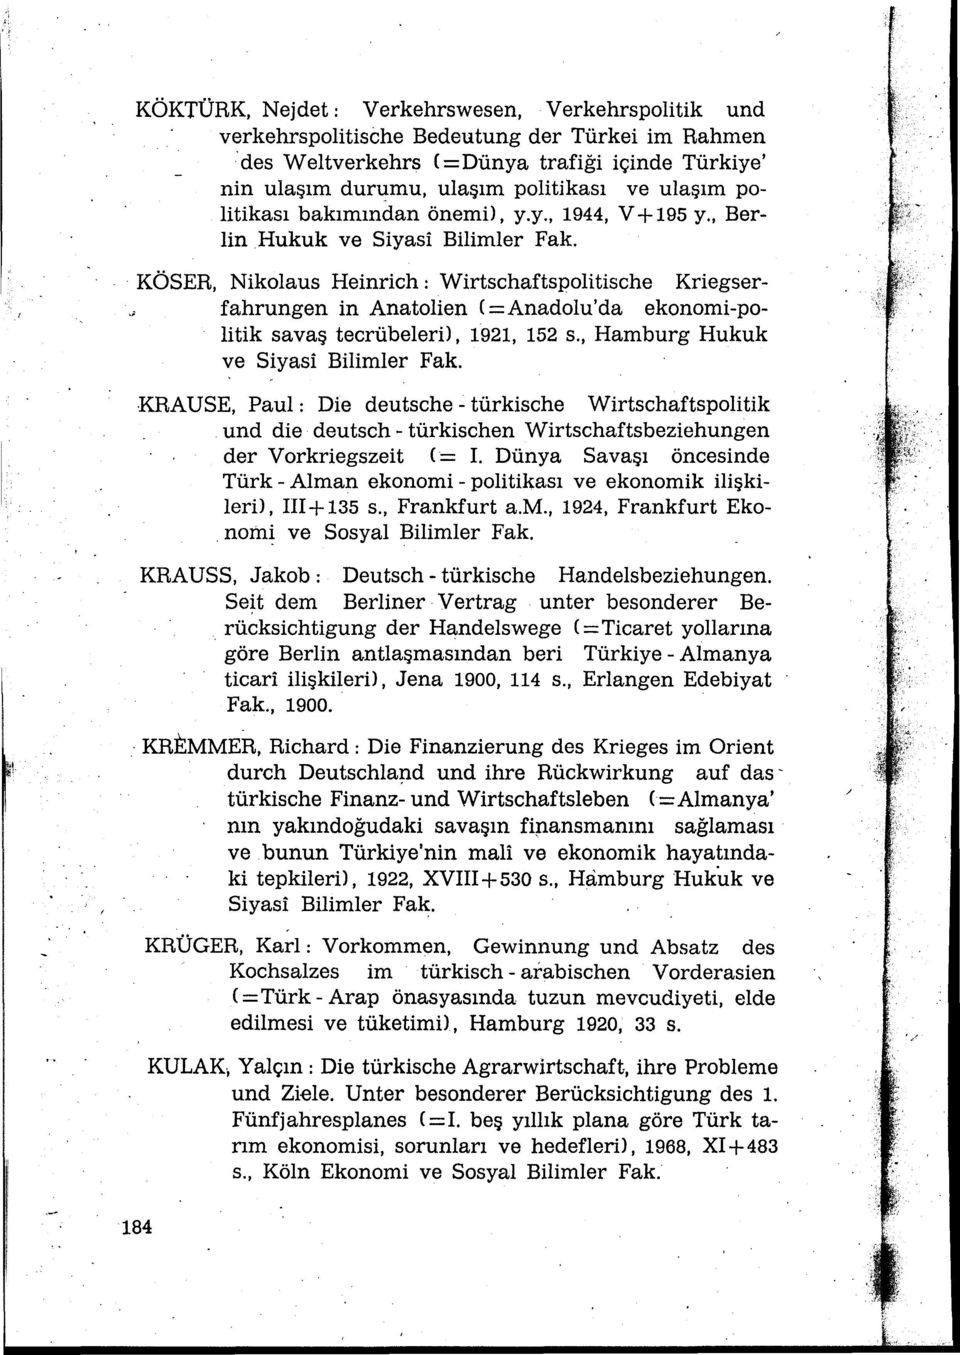 ; fahrungen in Anatalien ( = Anadolu'da ekonomi-politik savaş tecrübeleril, 1921, 152 s., Hamburg Hukuk ve Siyasi Bilimler Fak.